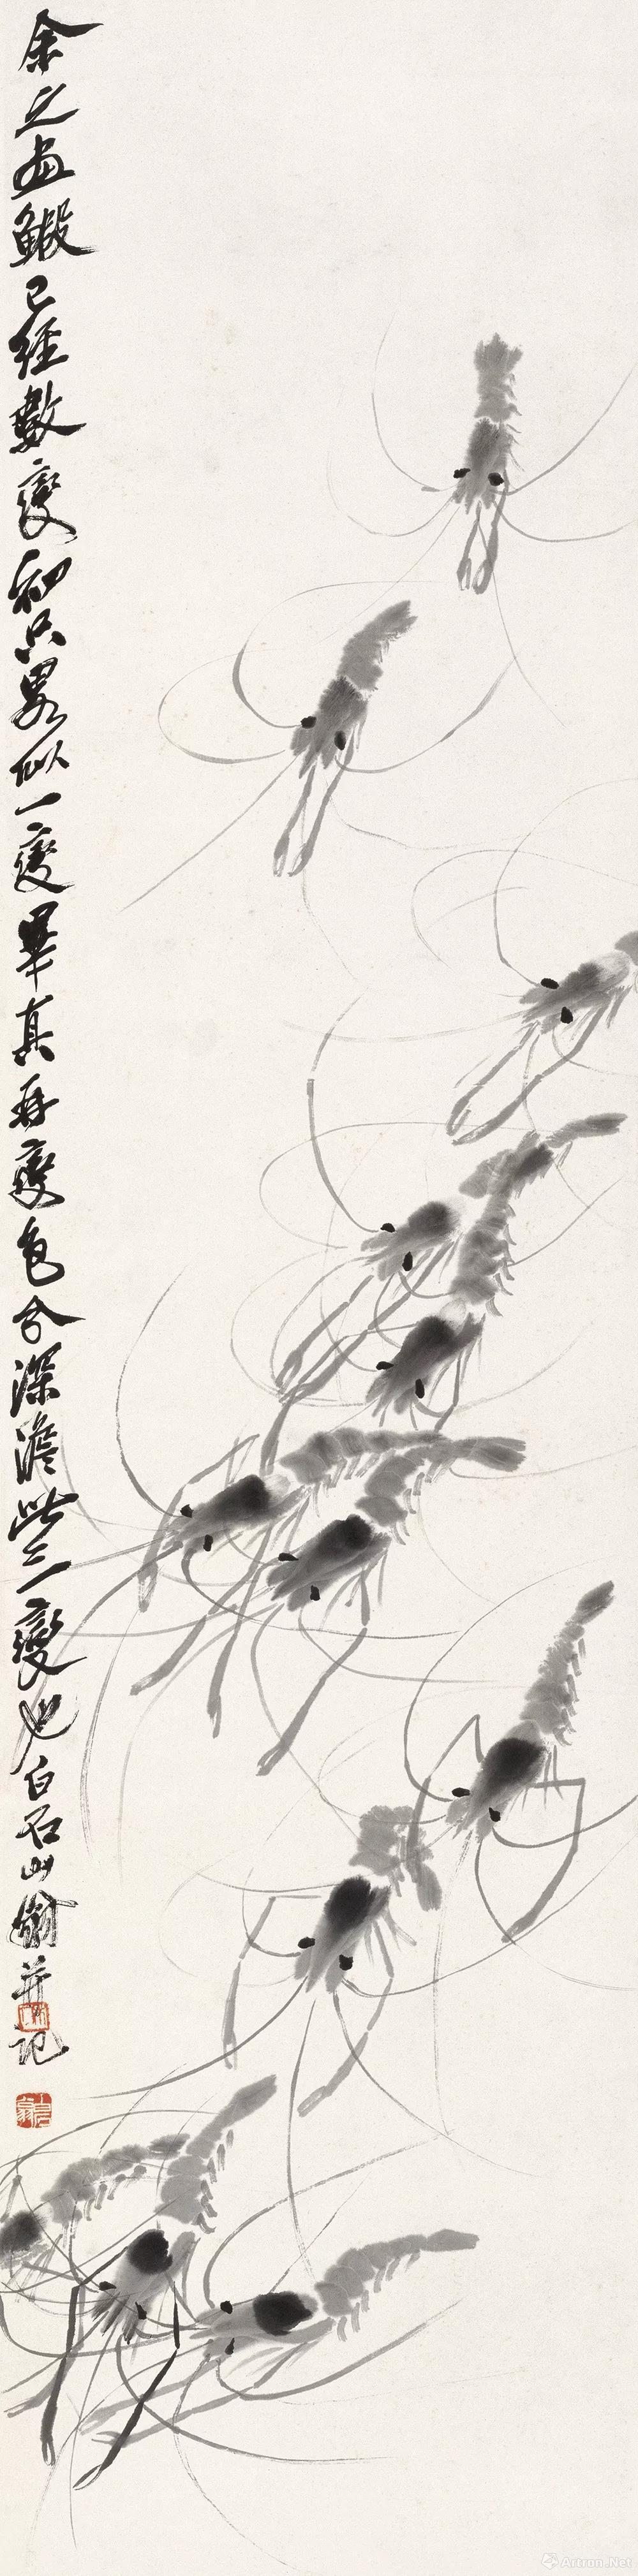 齐白石  鲤鱼争变化  北京画院藏